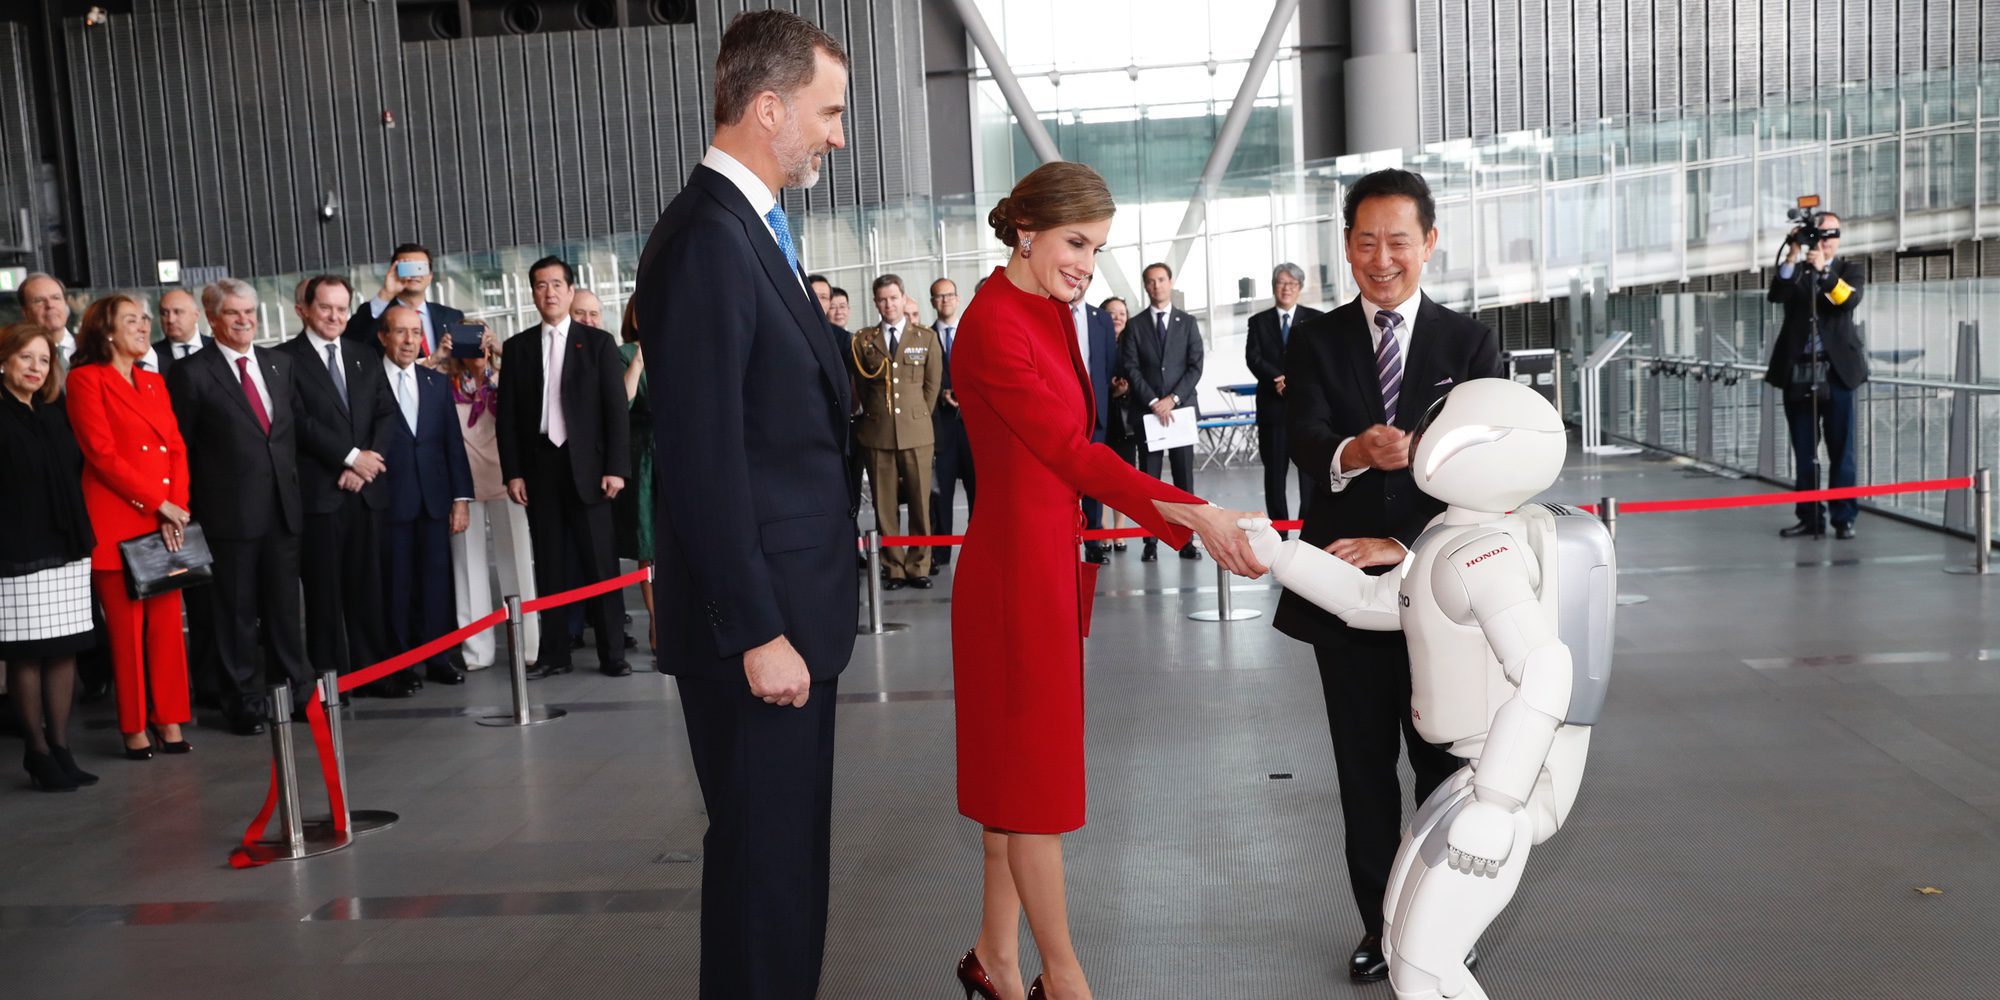 Los Reyes Felipe y Letizia, recibidos con honores por la Familia Imperial Japonesa y fascinados con un robot